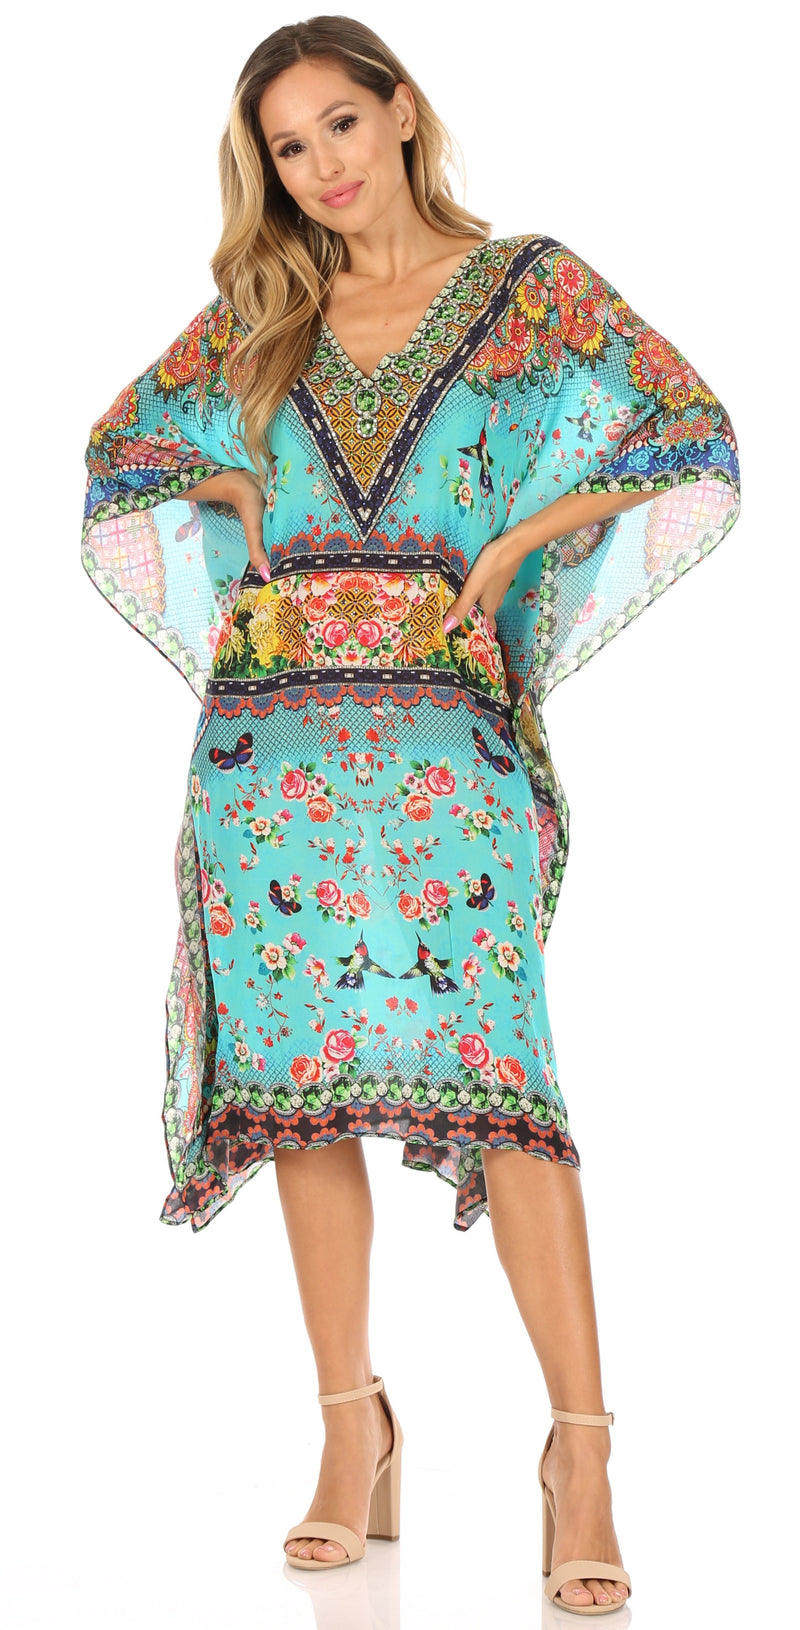 Sakkas MiuMiu Ligthweight Summer Printed Short Caftan Dress / Cover Up